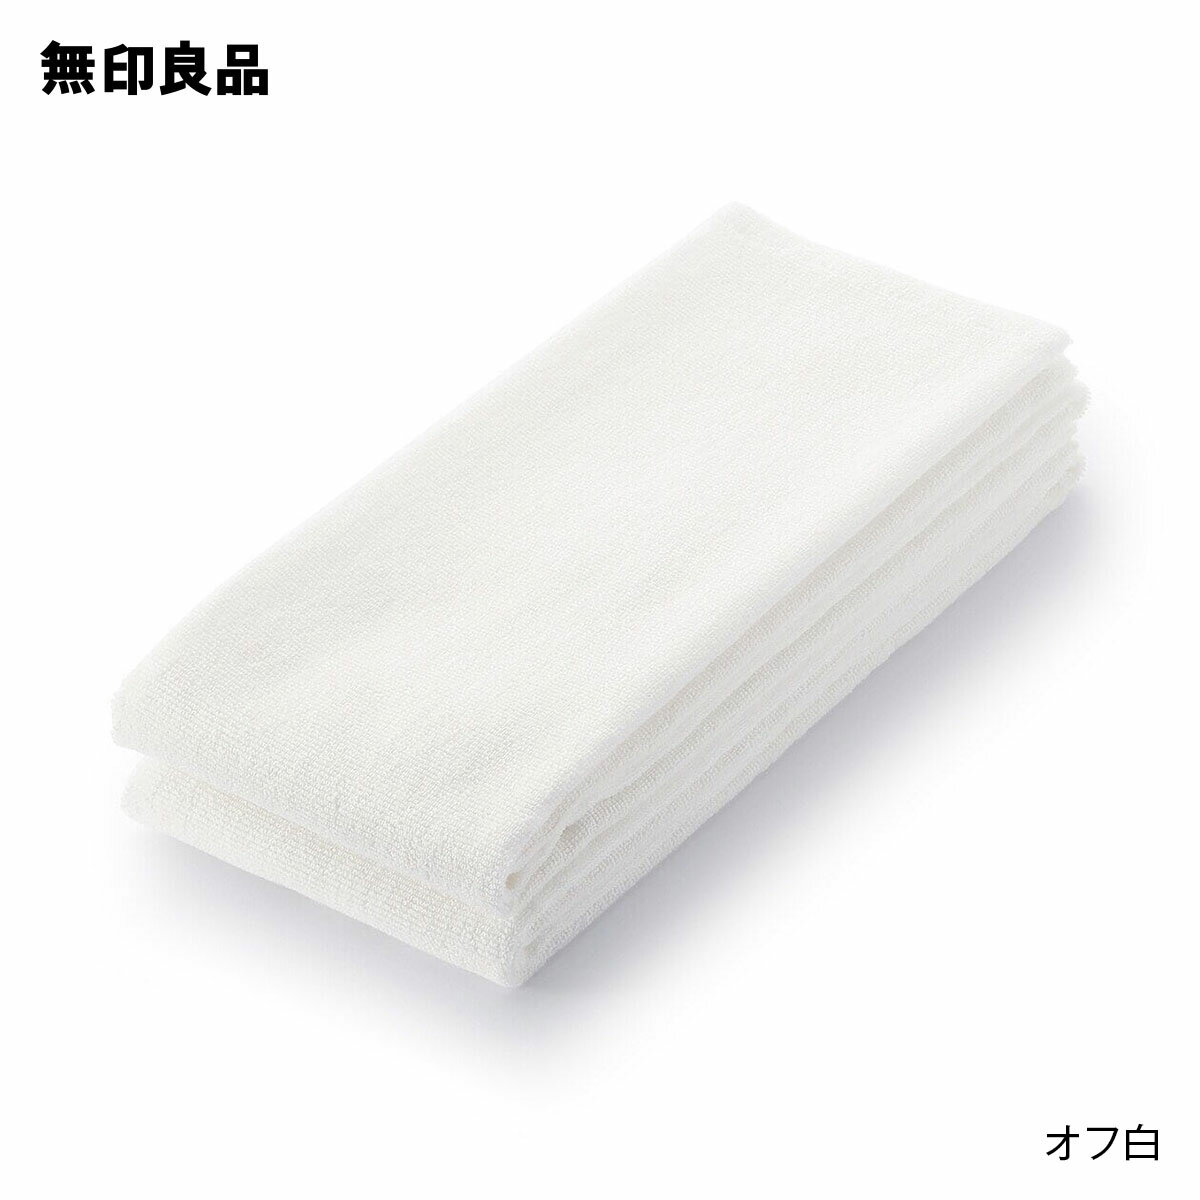 【ロング】パイル織り2枚組ロングタオル・4枚組・34×110cm